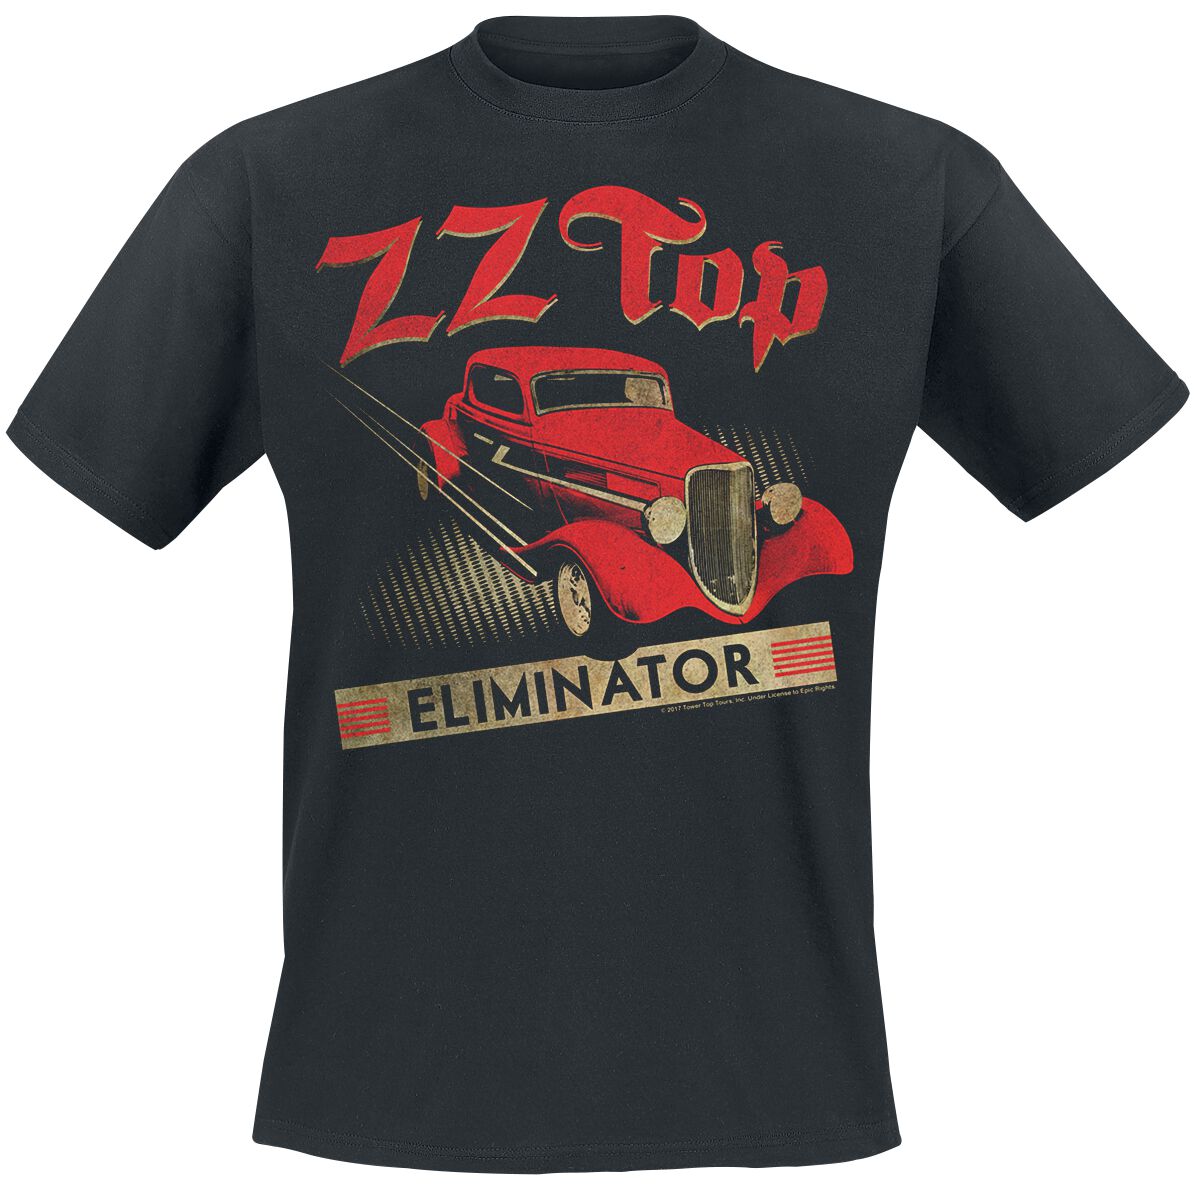 ZZ Top T-Shirt - Eliminator - S bis XXL - für Männer - Größe M - schwarz  - Lizenziertes Merchandise!